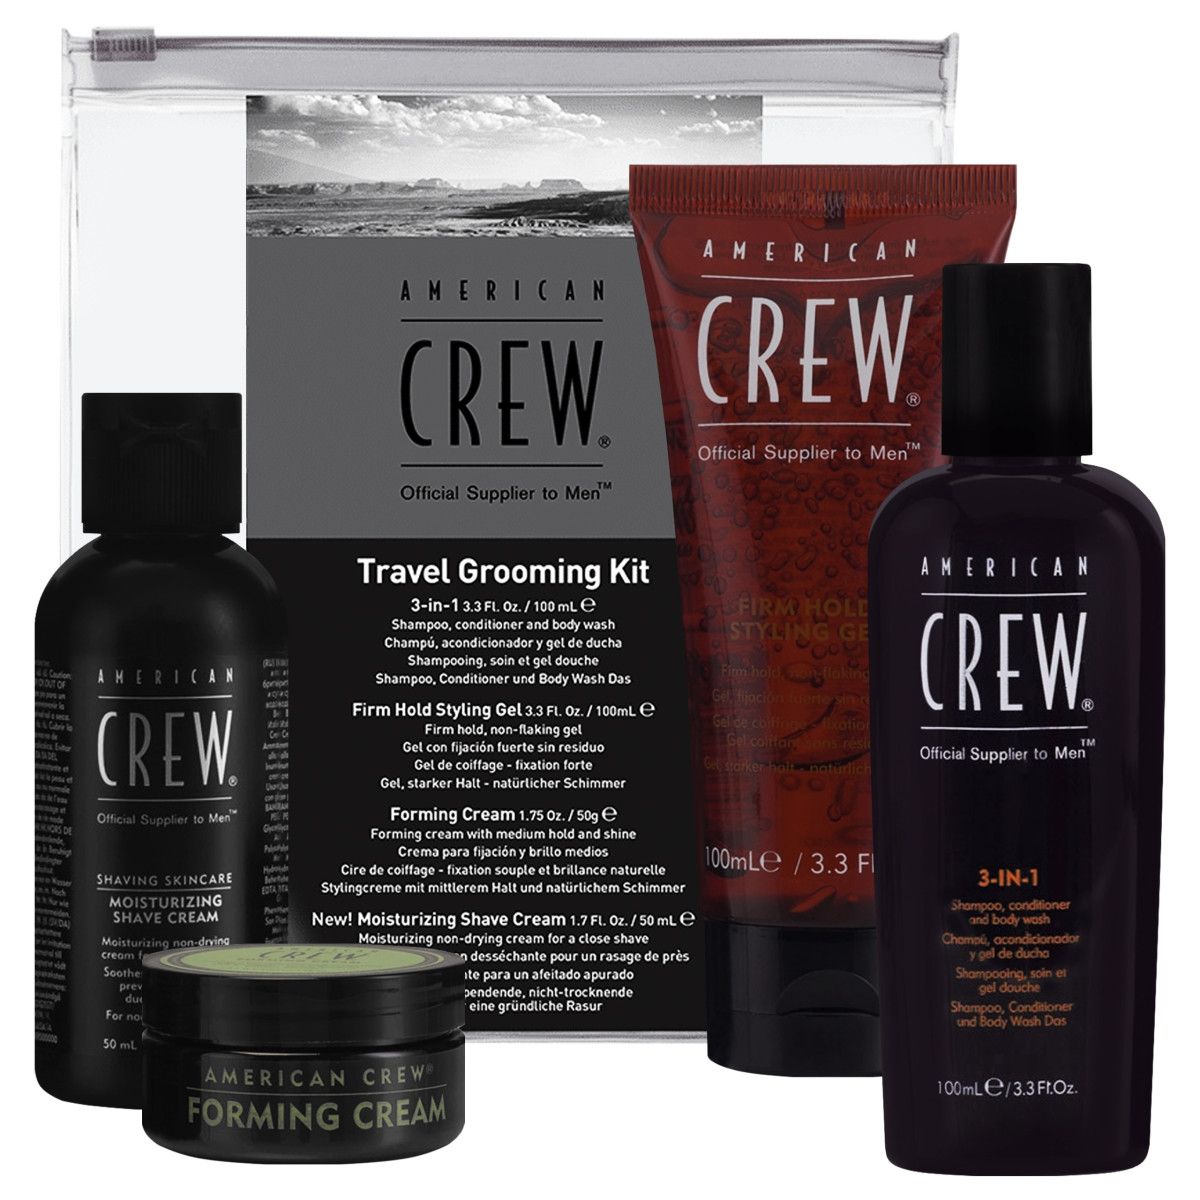 American Crew Travel Kit Grooming - zestaw kosmetyków męskich na podróż, 2x100ml+2x50m